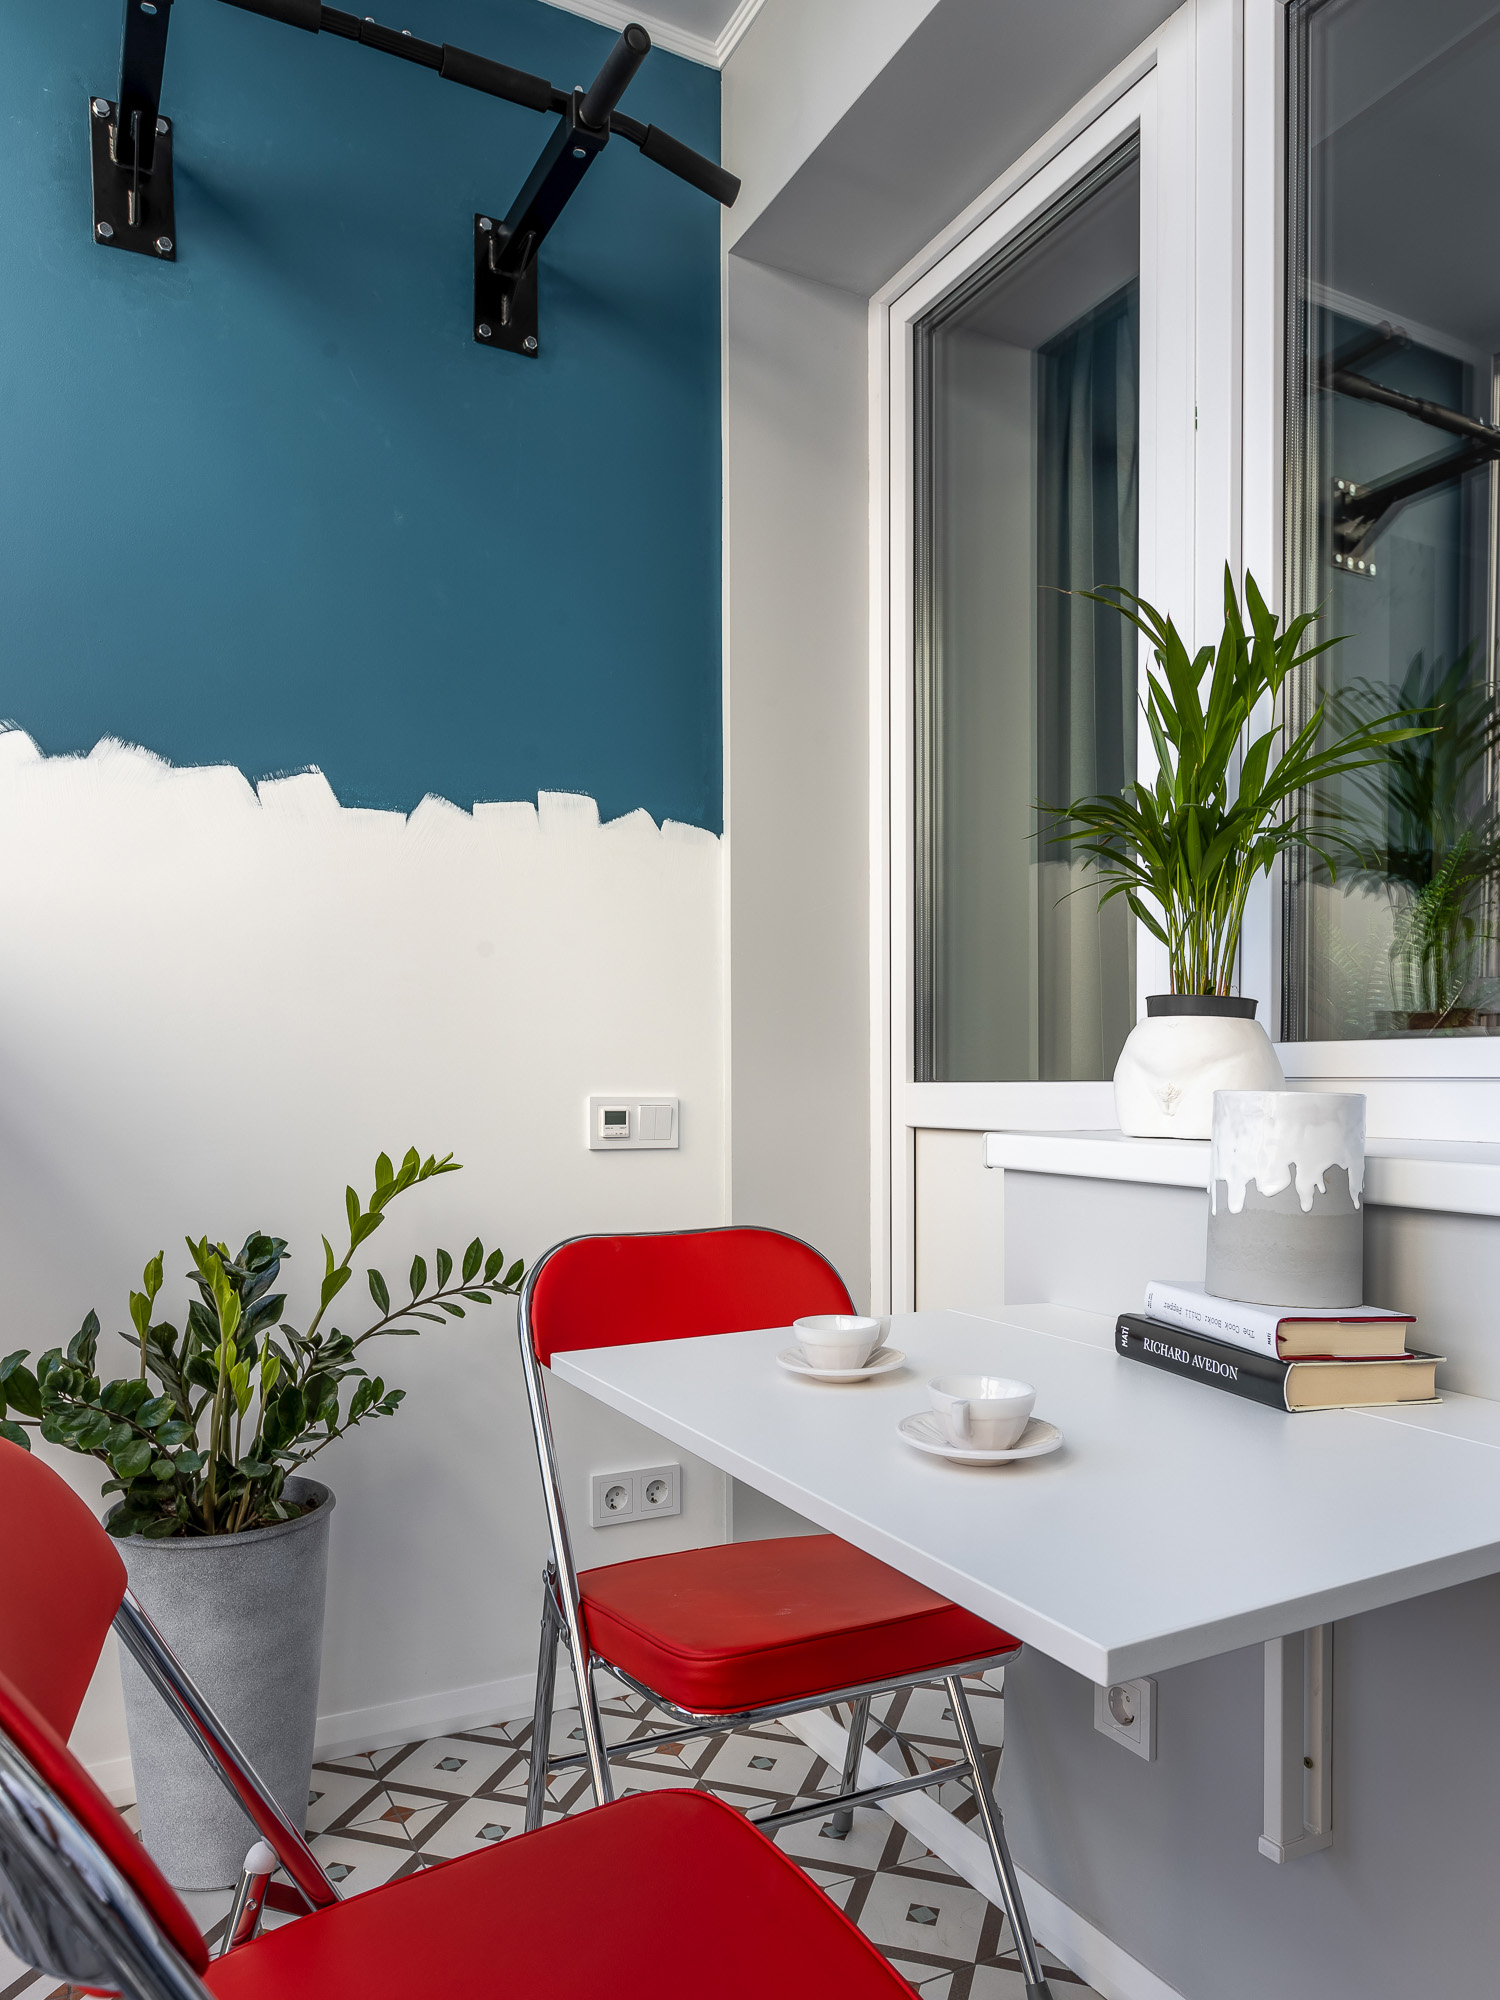 Bên ngoài là góc logia nhỏ nhắn với những chậu cây xanh trang trí cùng bức tường sử dụng cách thức sơn nửa tường trắng - xanh đầy ngẫu hứng. Những chiếc ghế màu đỏ nổi bật bên cạnh chiếc bàn có thể gấp gọn tạo nên một góc thư giãn nhẹ nhàng nhưng cá tính.